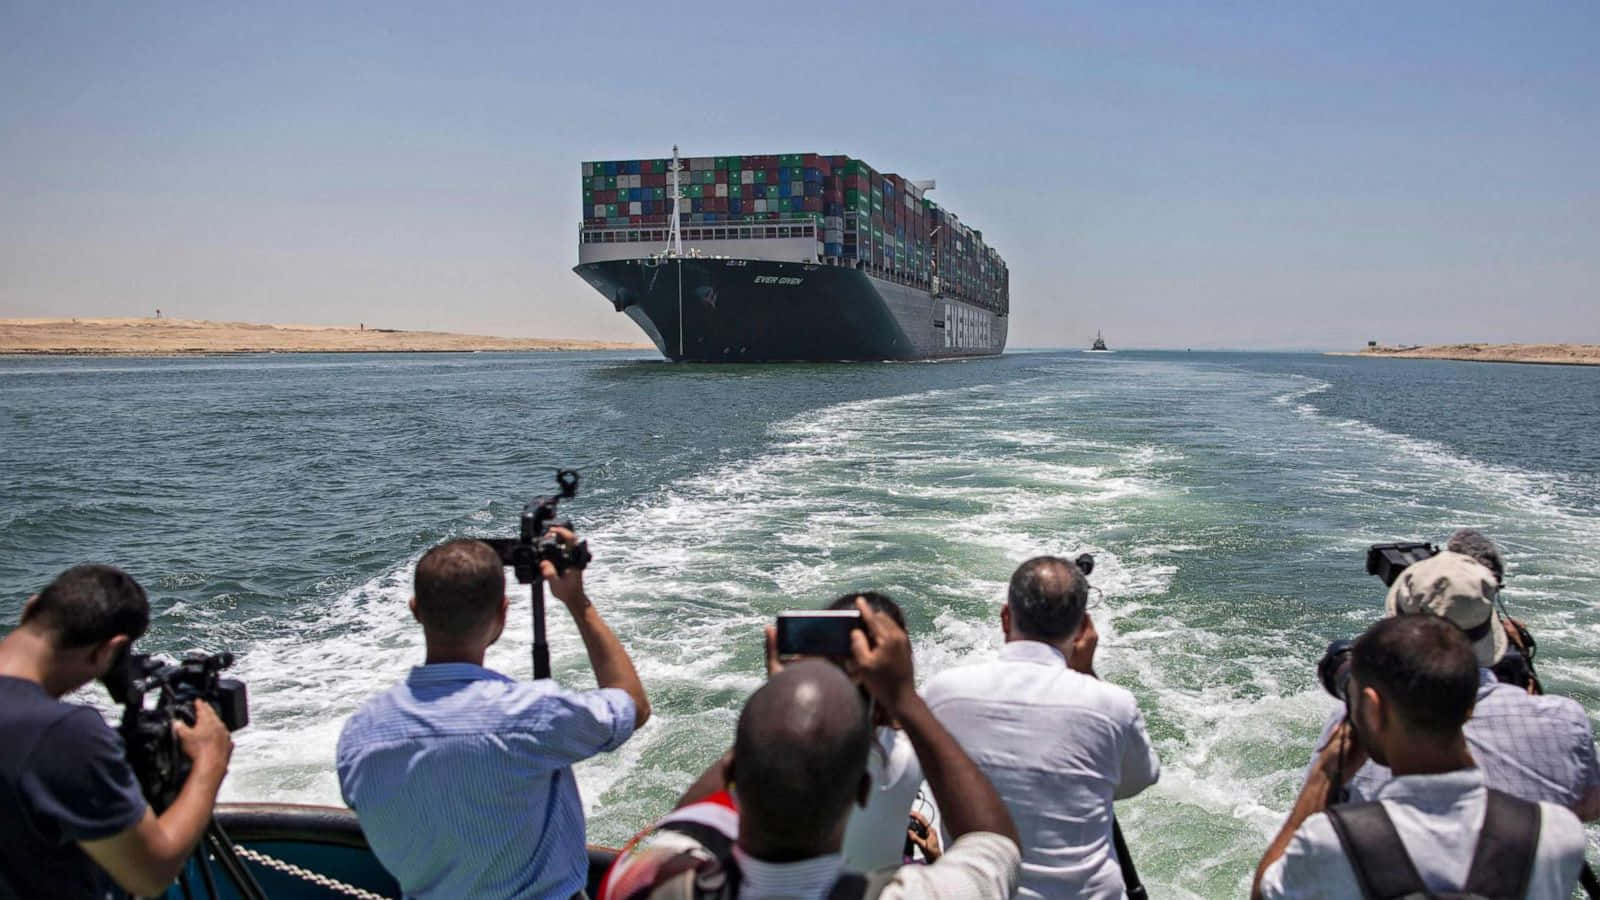 Barcosatravesando El Canal De Suez En Egipto.